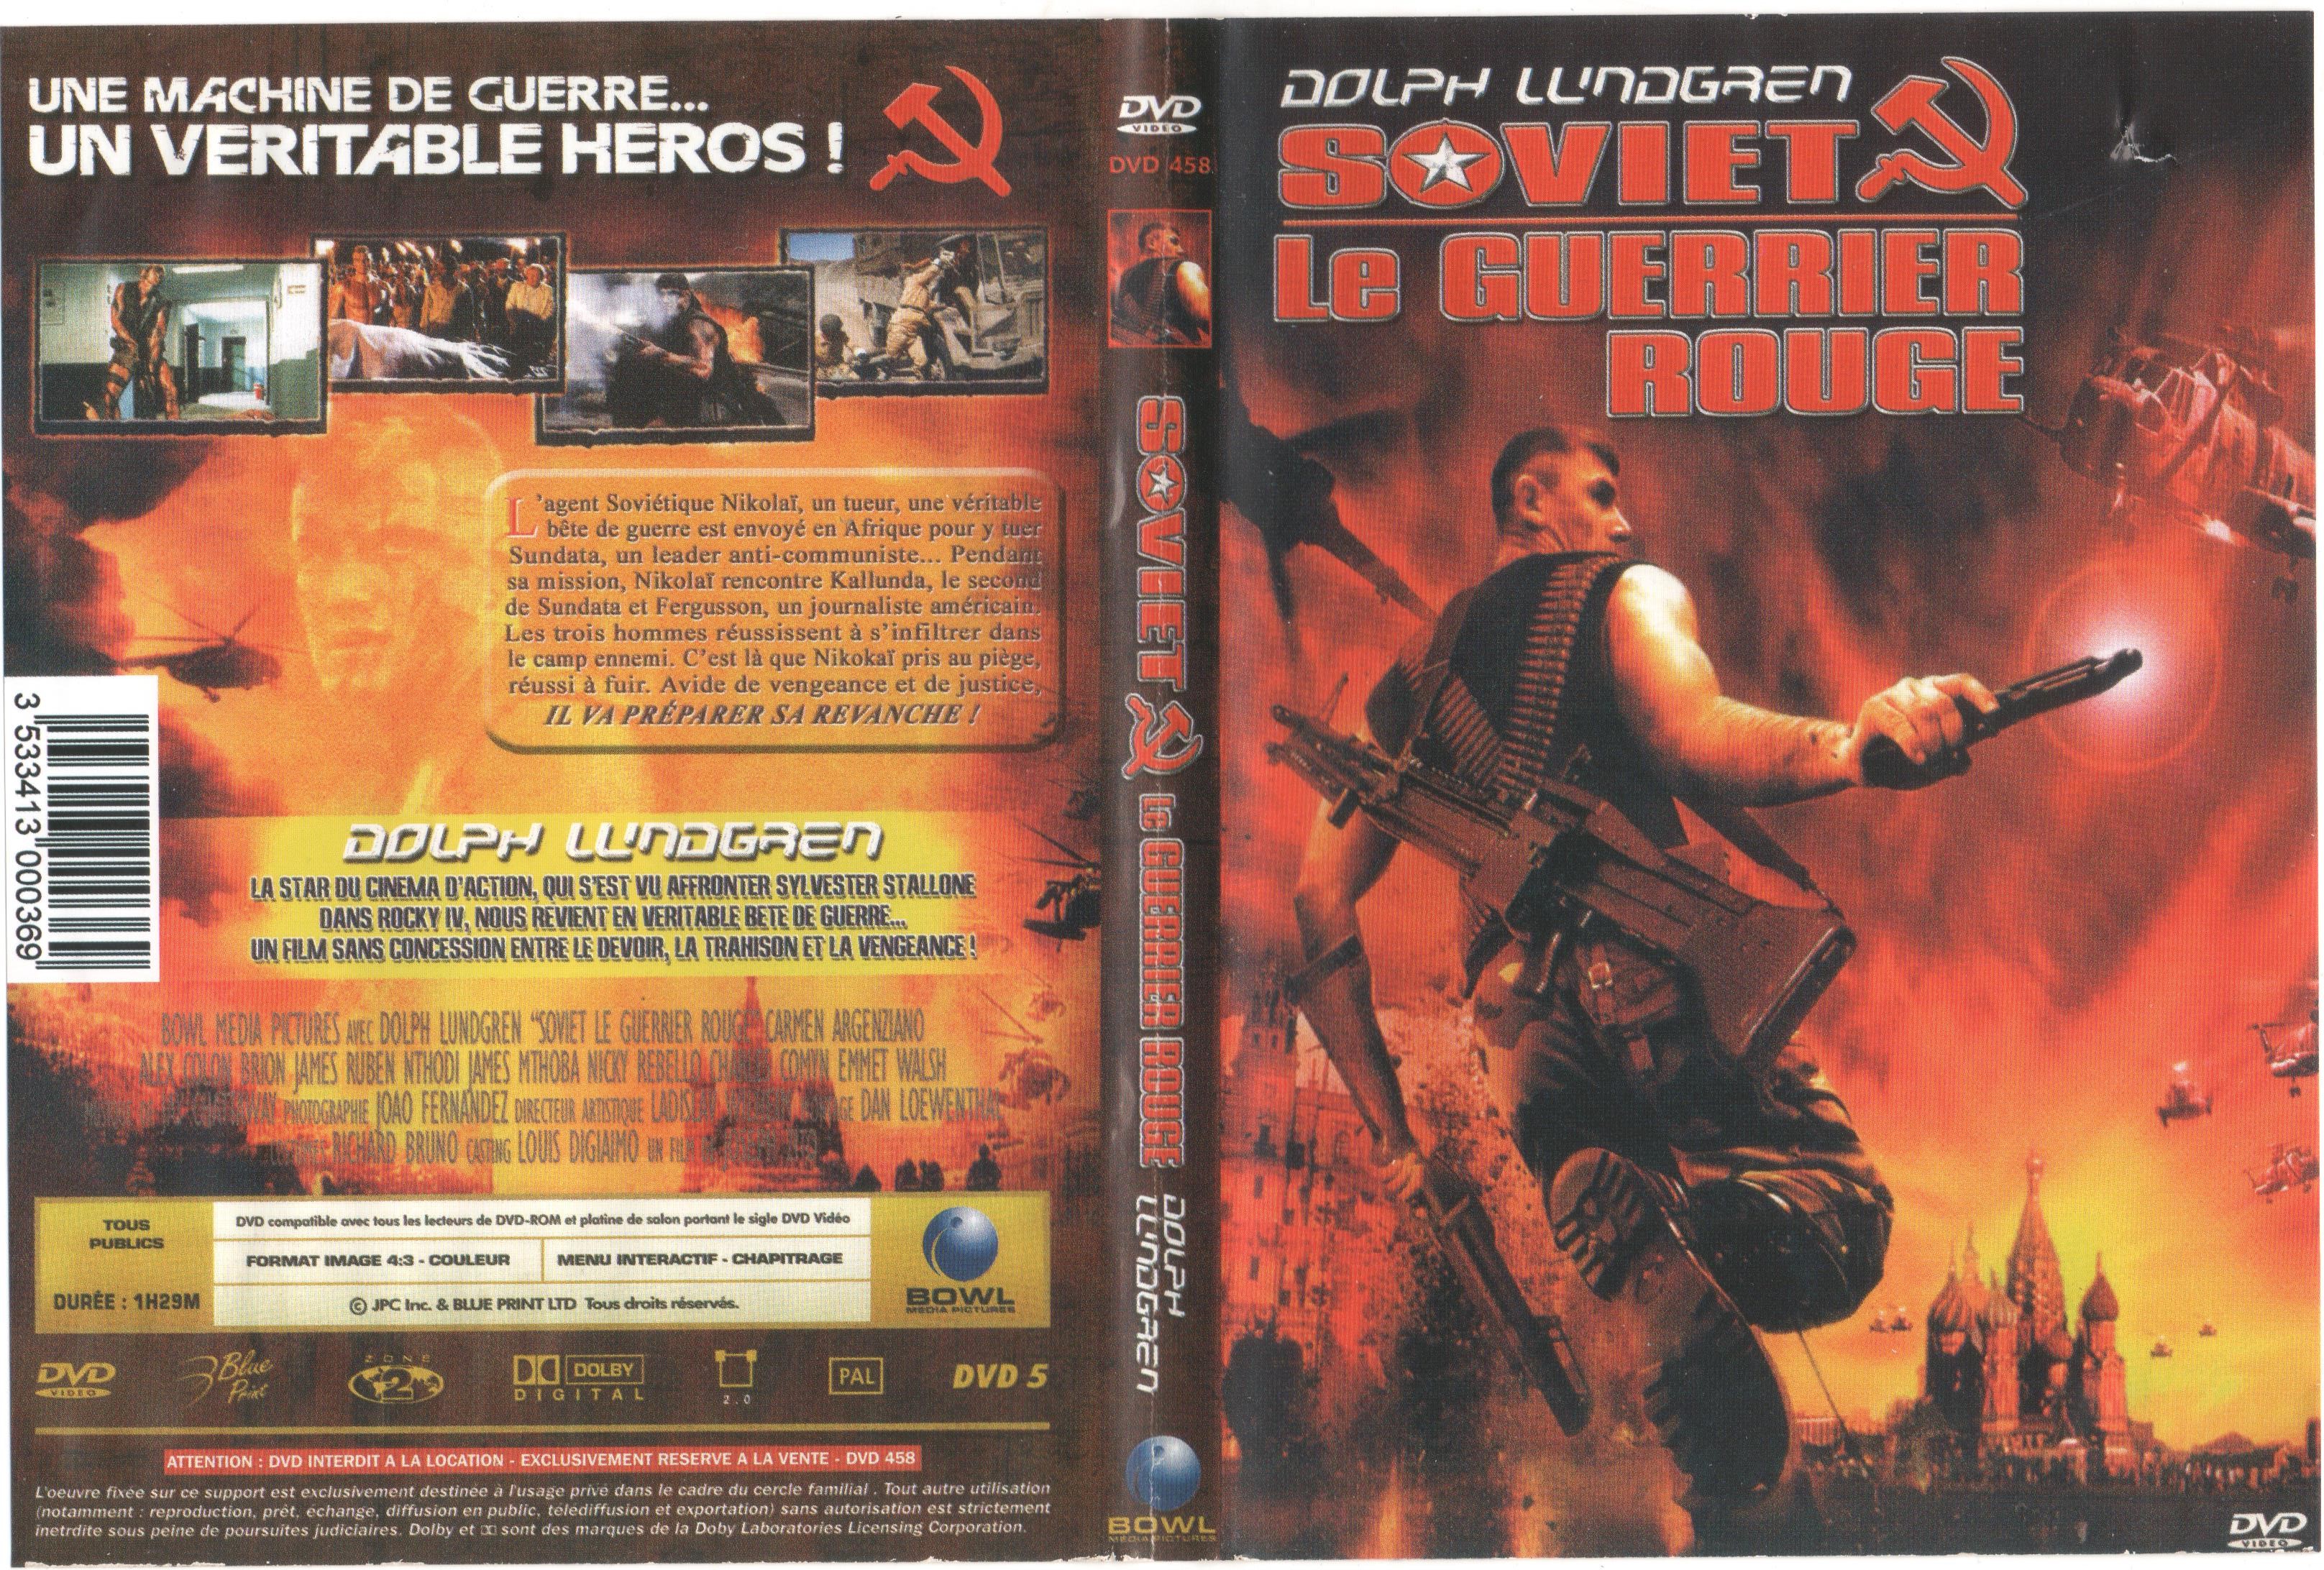 Jaquette DVD Soviet le guerrier rouge 